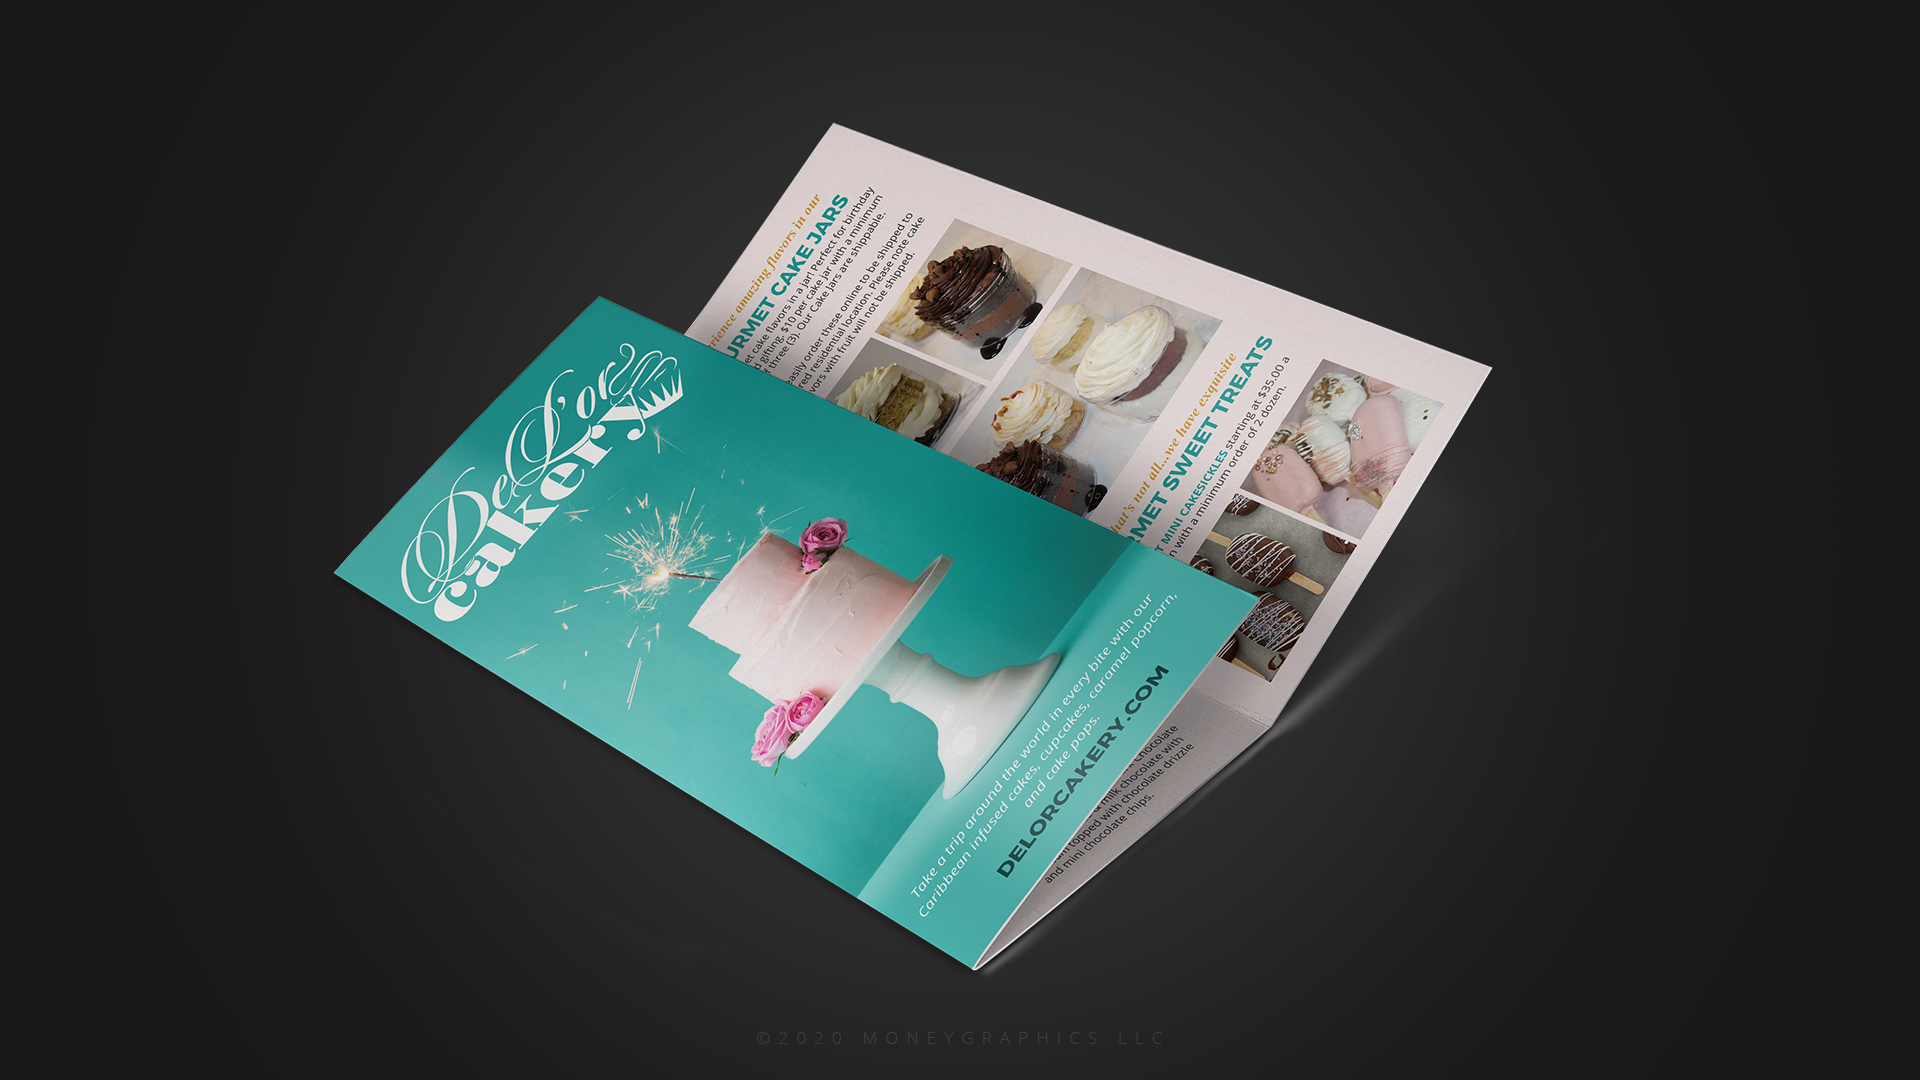 de_lor_cakery_brochure_design